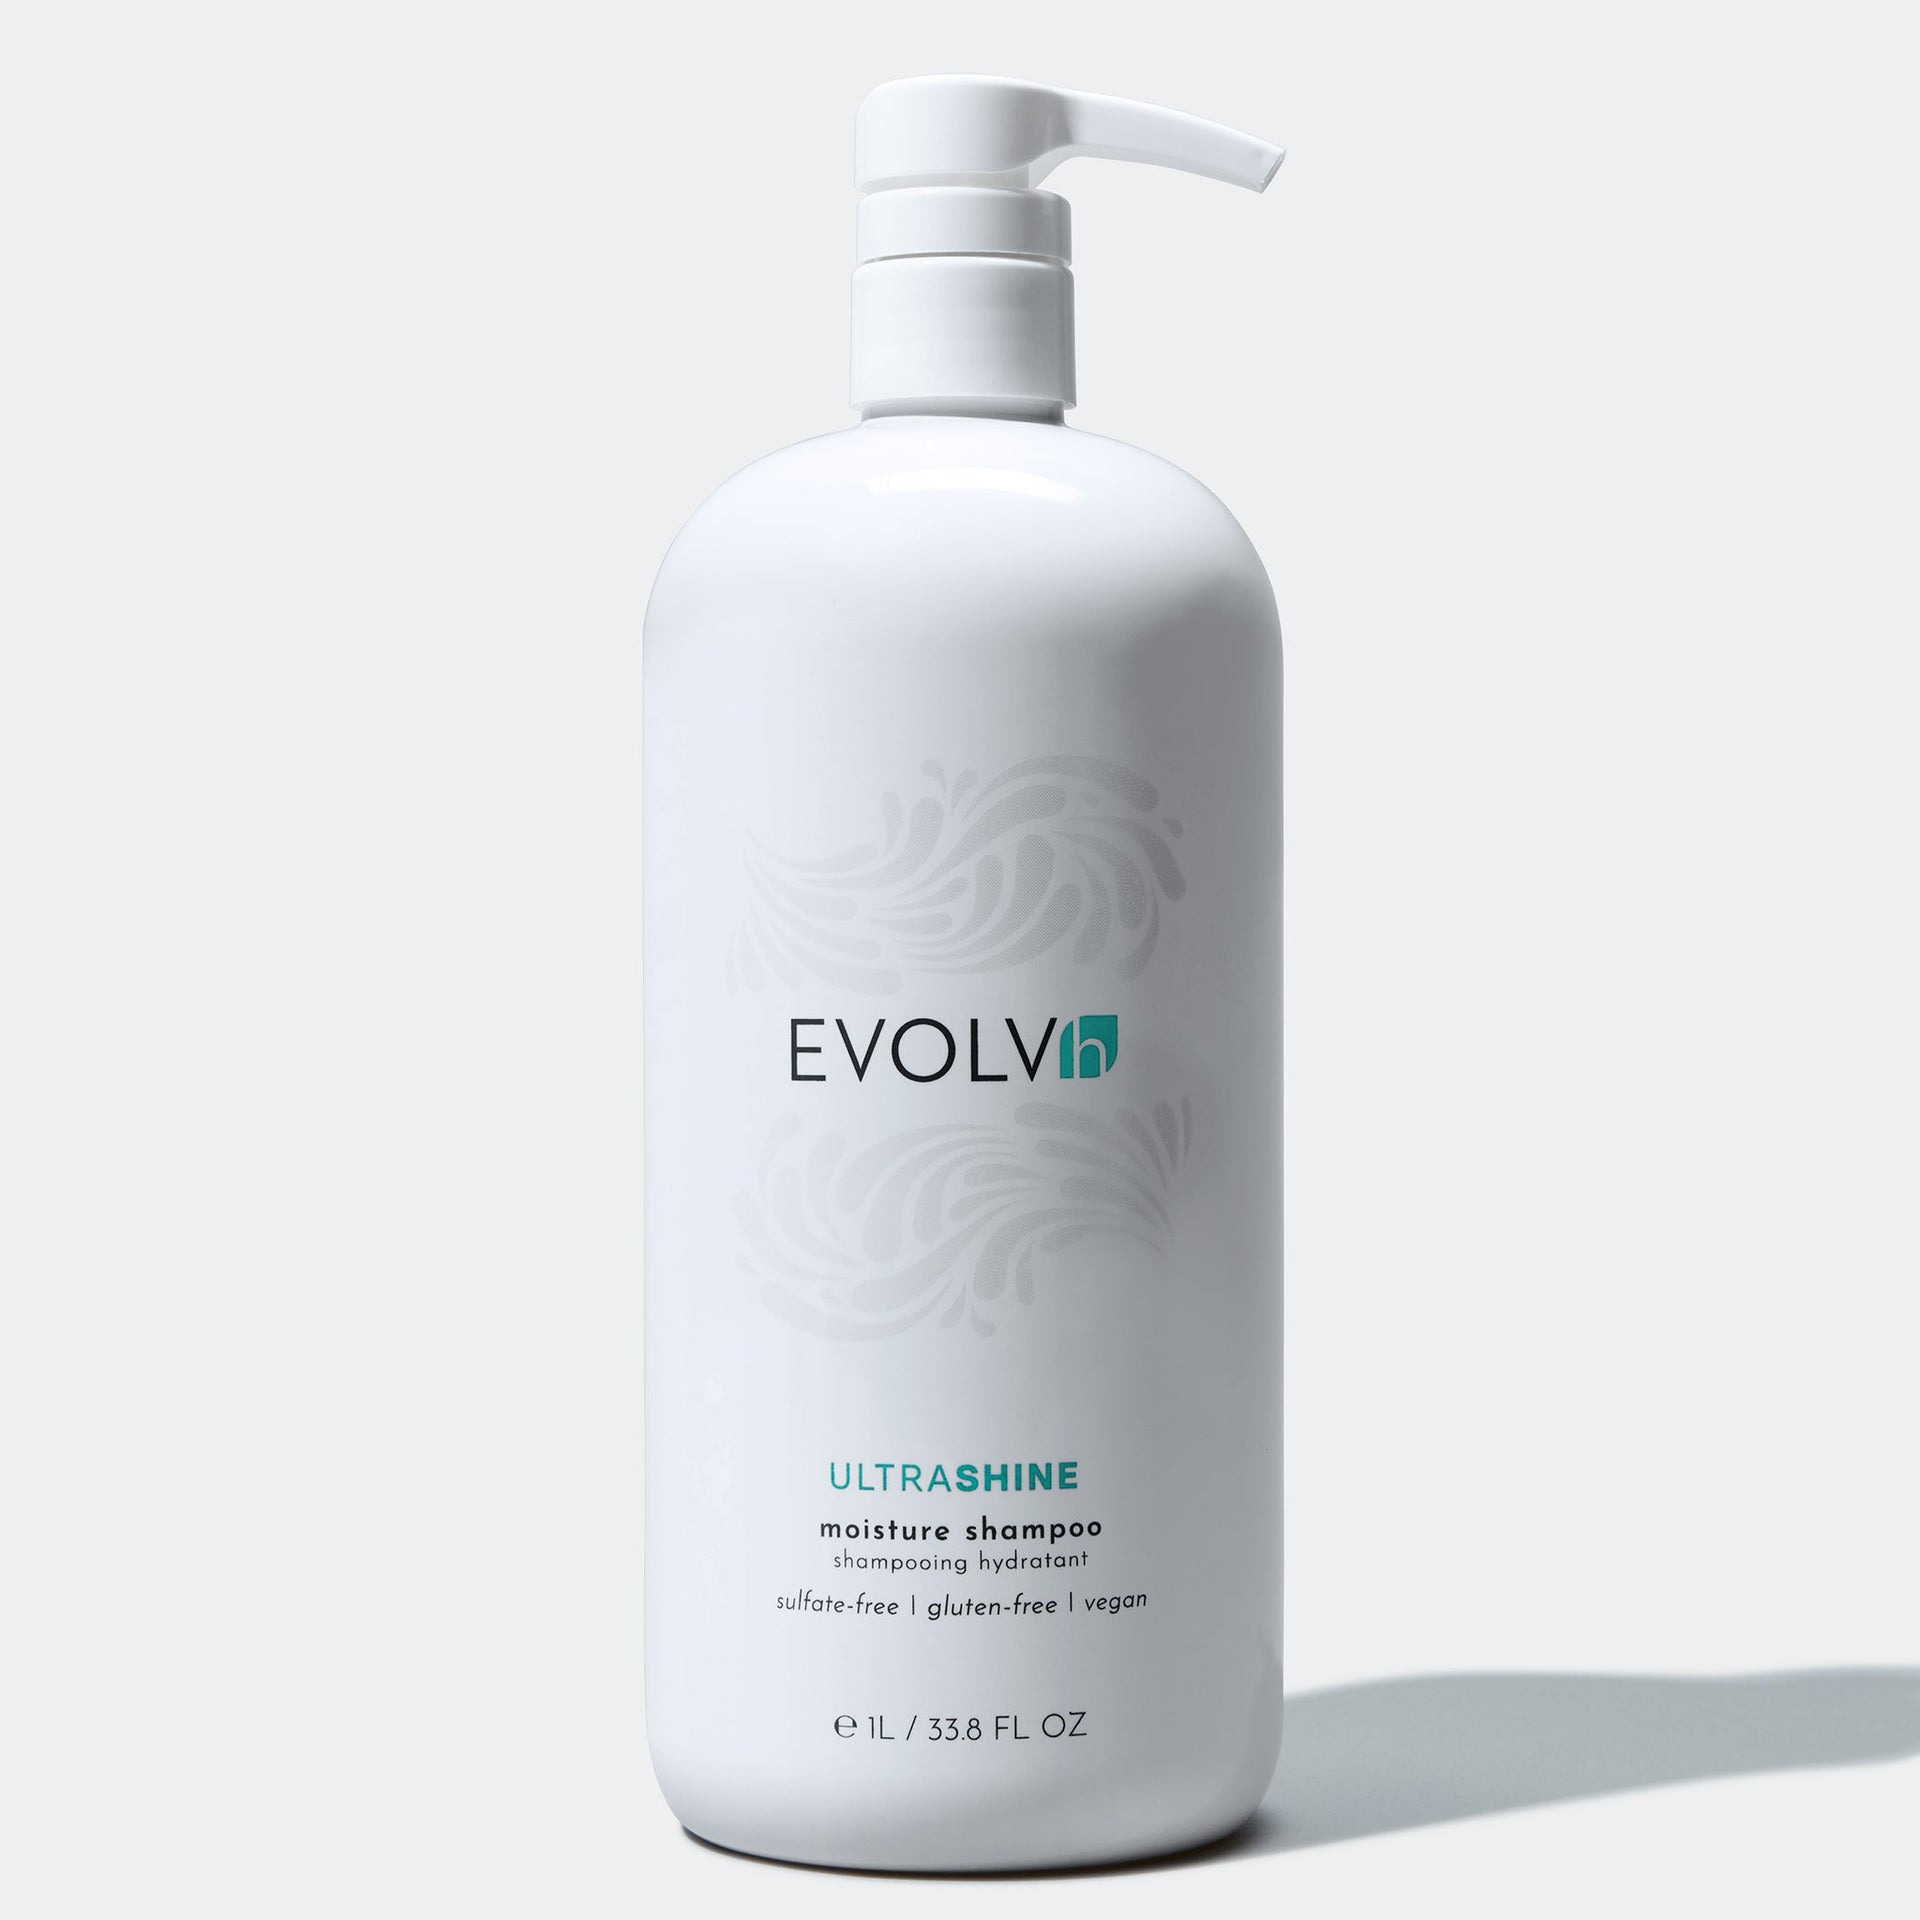 Evolvh 1 liter UltraShine Moisture Shampoo